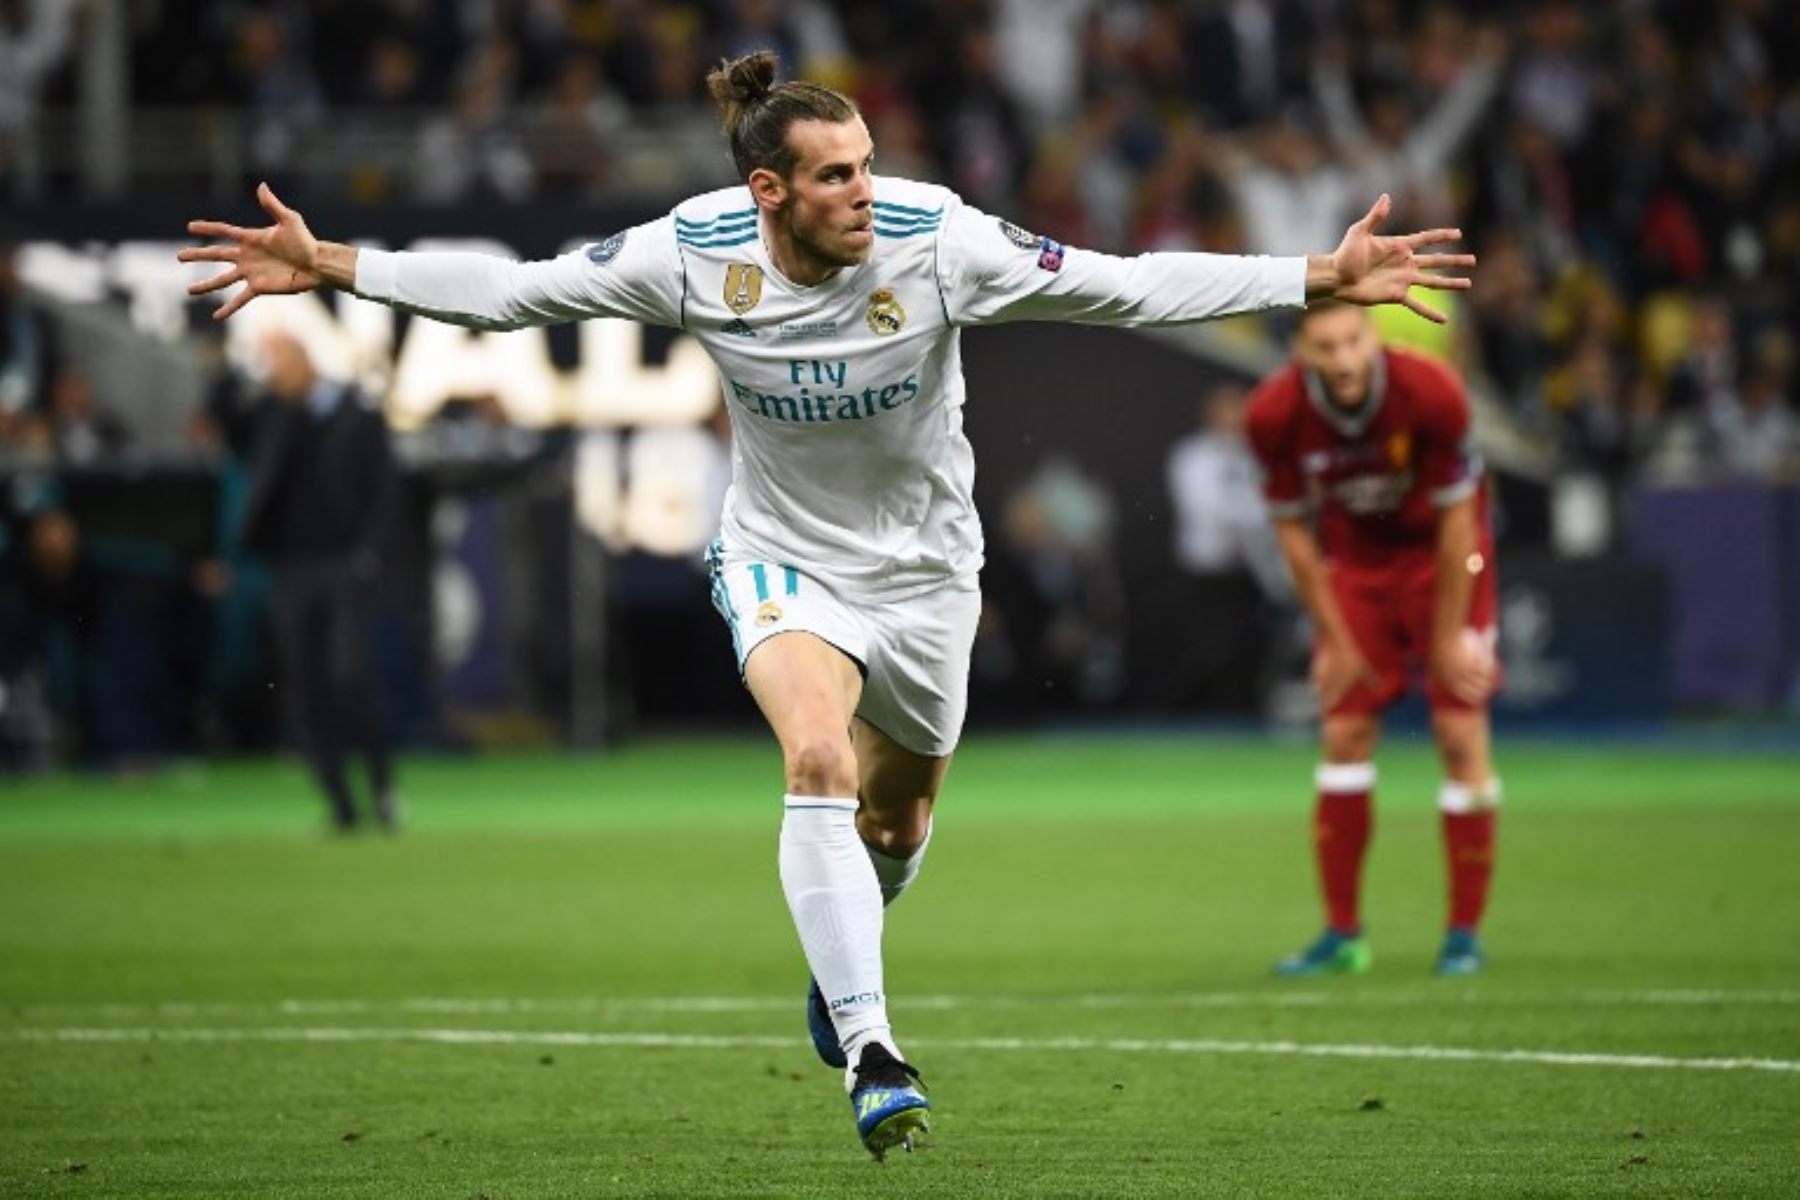 El delantero gaélico del Real Madrid Gareth Bale celebra después de anotar el segundo gol de su equipo durante el partido de fútbol final de la UEFA Champions League entre el Liverpool y el Real Madrid en el Estadio Olímpico de Kiev.Foto:AFP